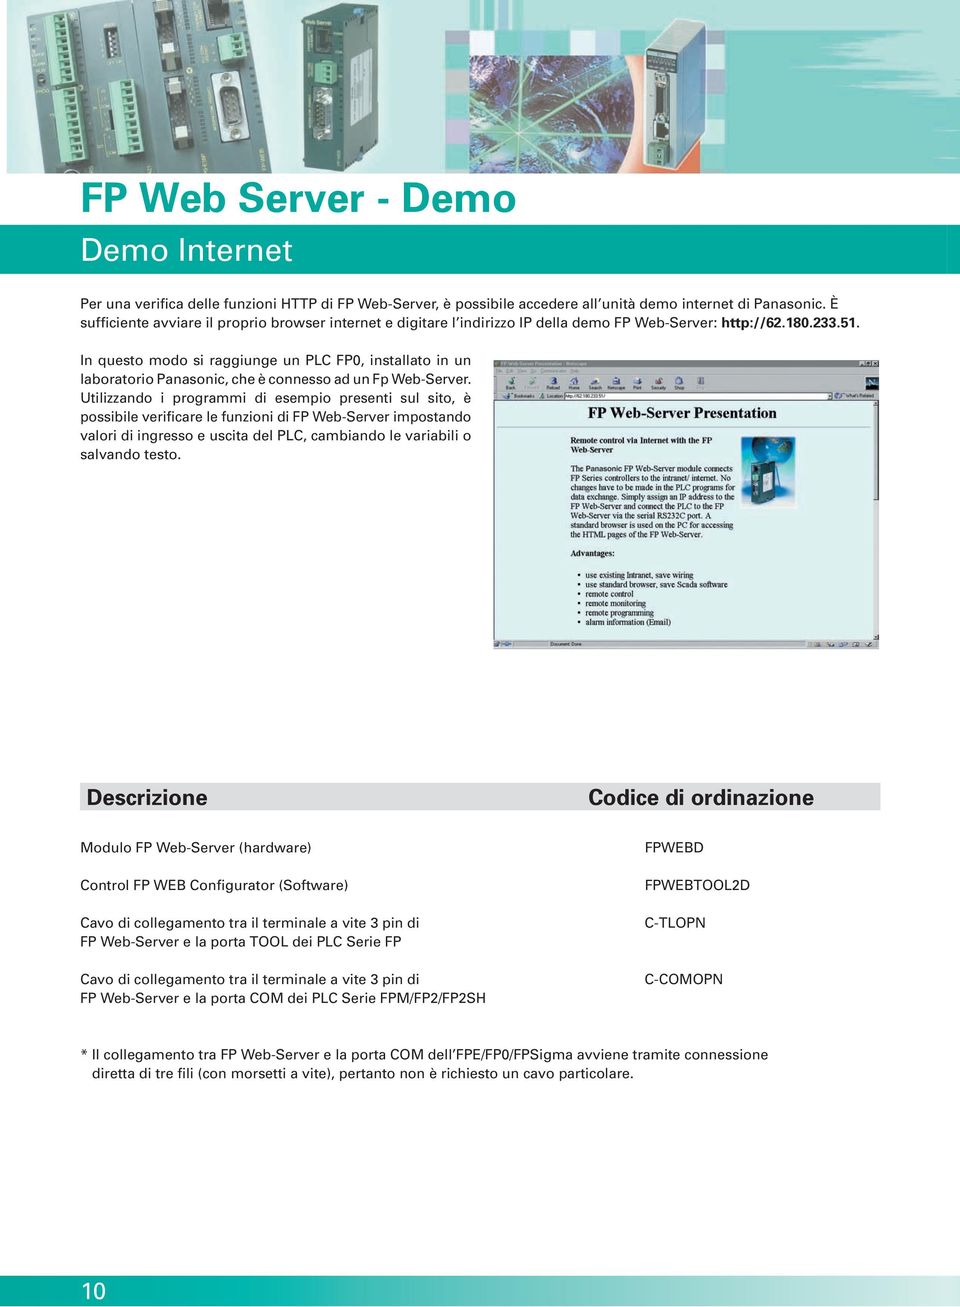 In questo modo si raggiunge un PLC FP0, installato in un laboratorio Panasonic, che è connesso ad un Fp Web-Server.